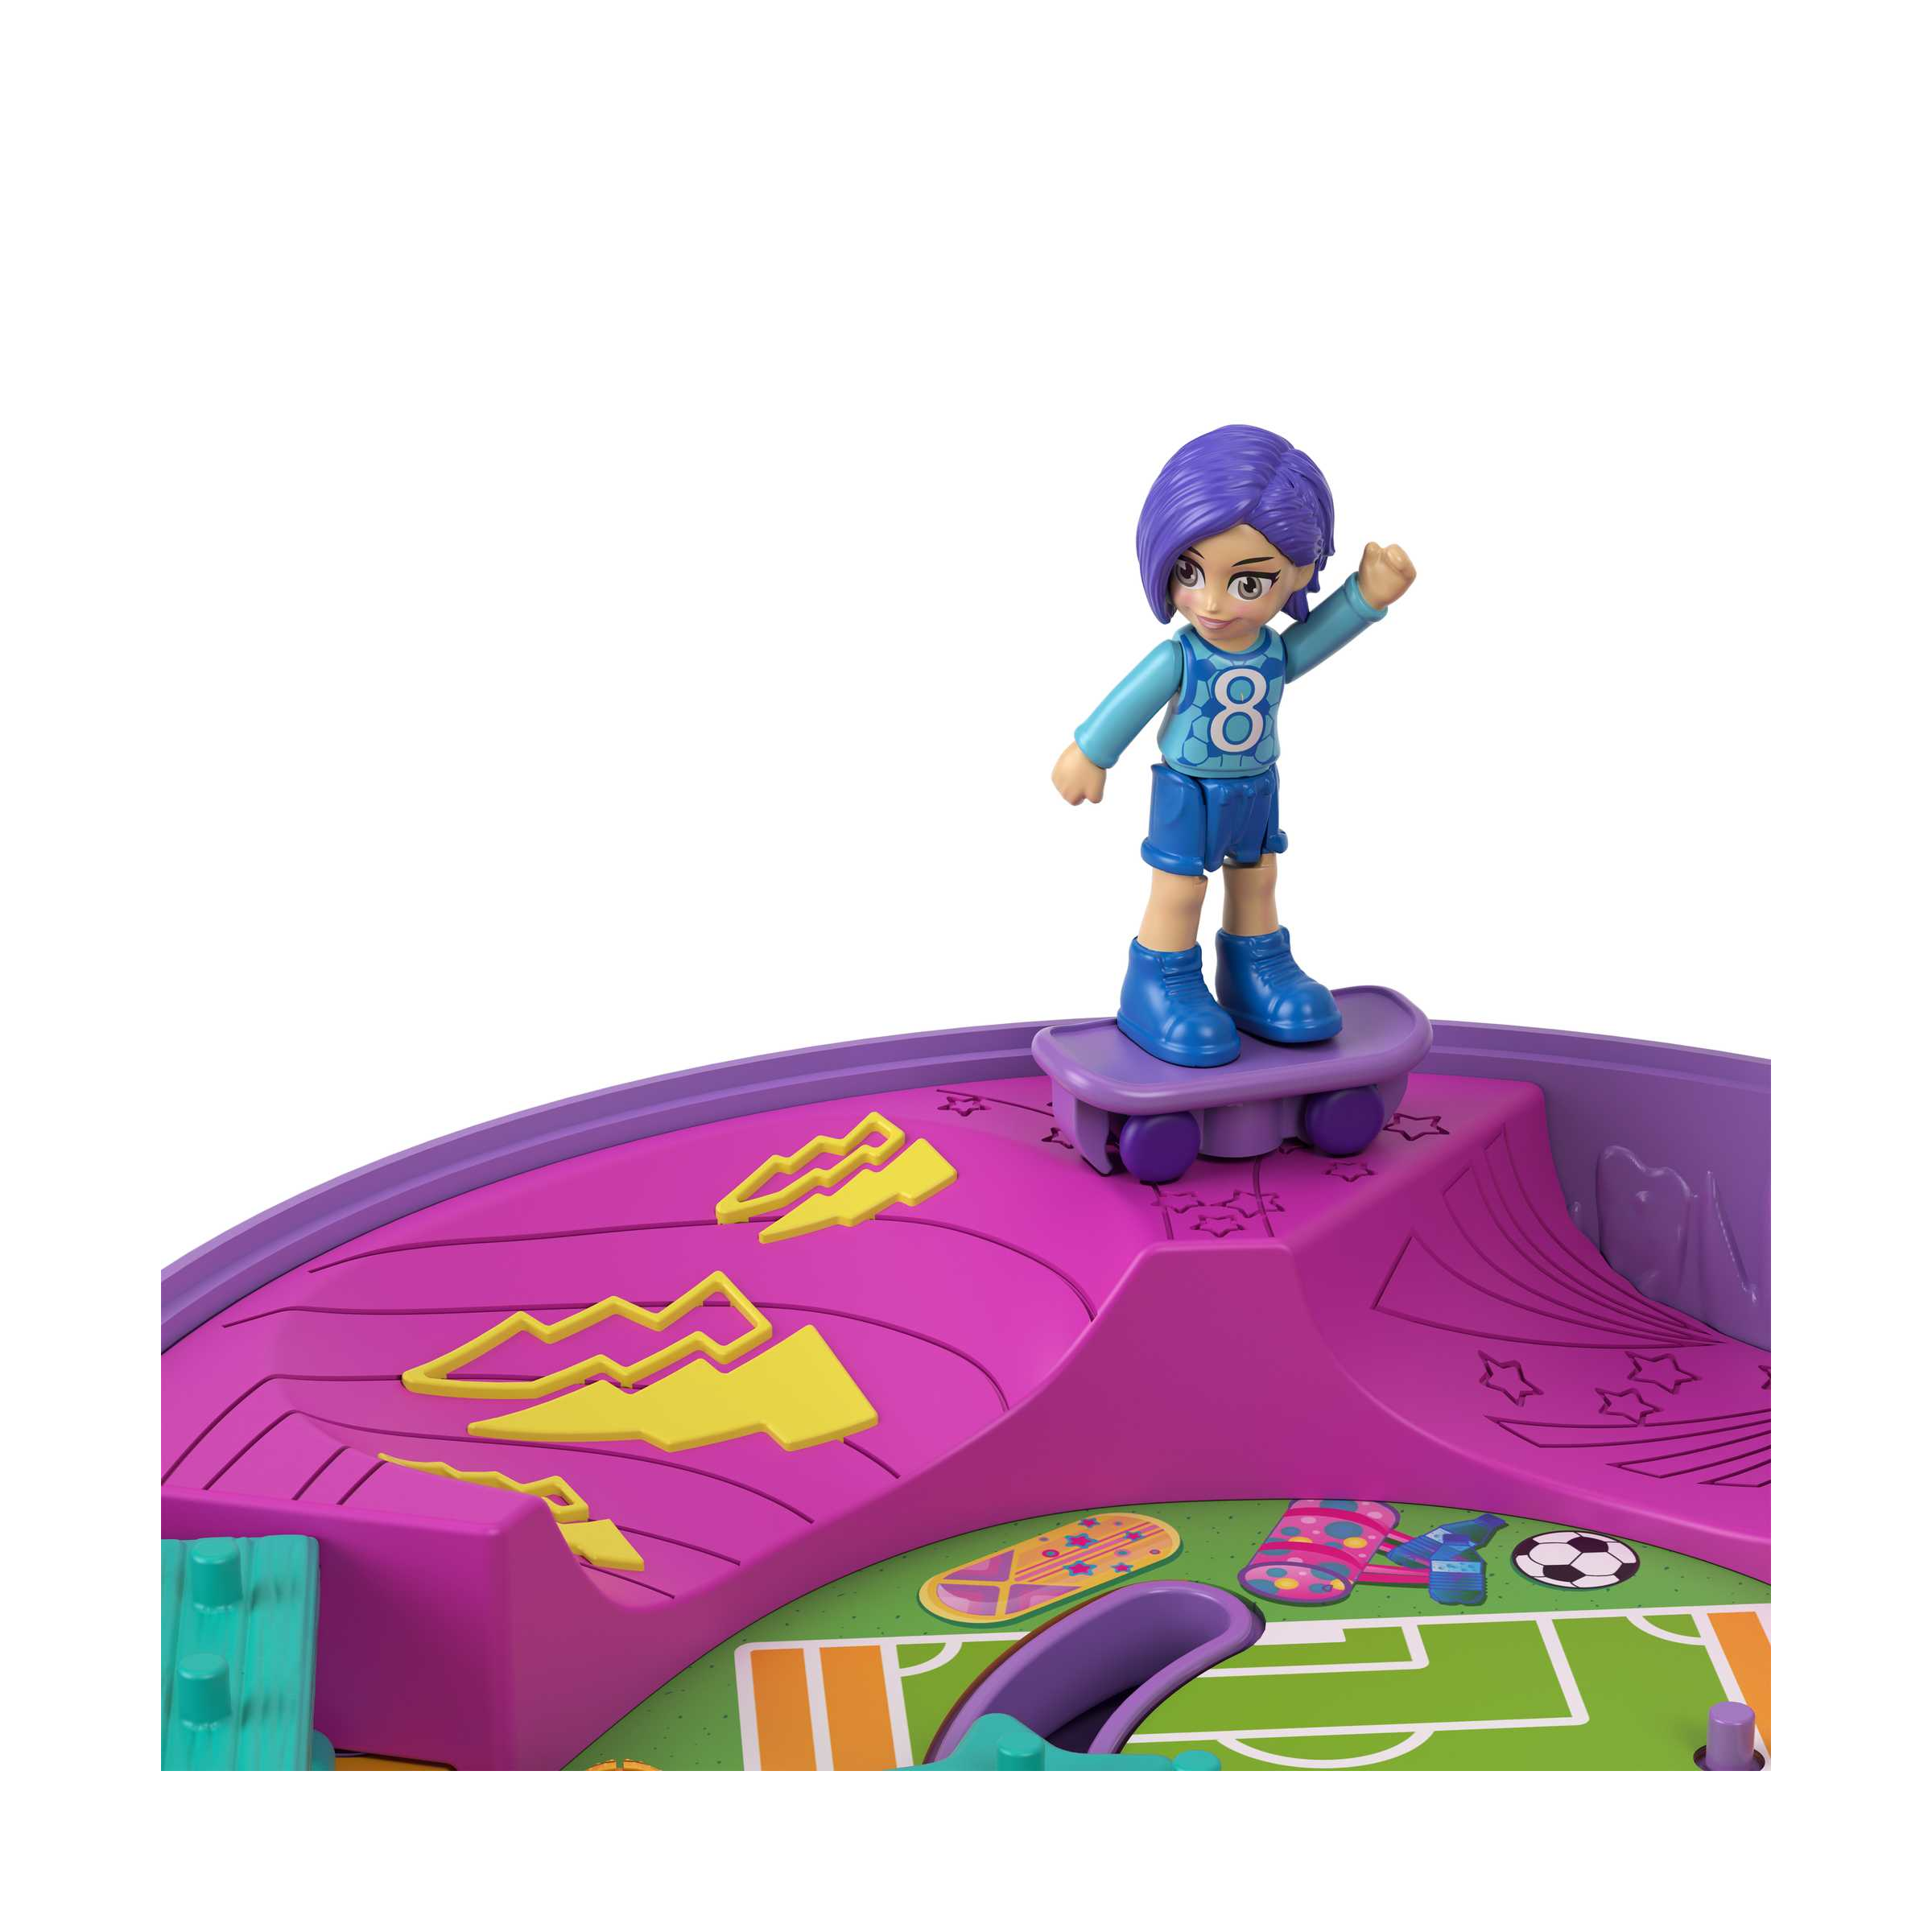 Polly pocket - cofanetto partita di calcio con accessori, giocattolo per bambini 4+ anni, hcg14 - Polly Pocket